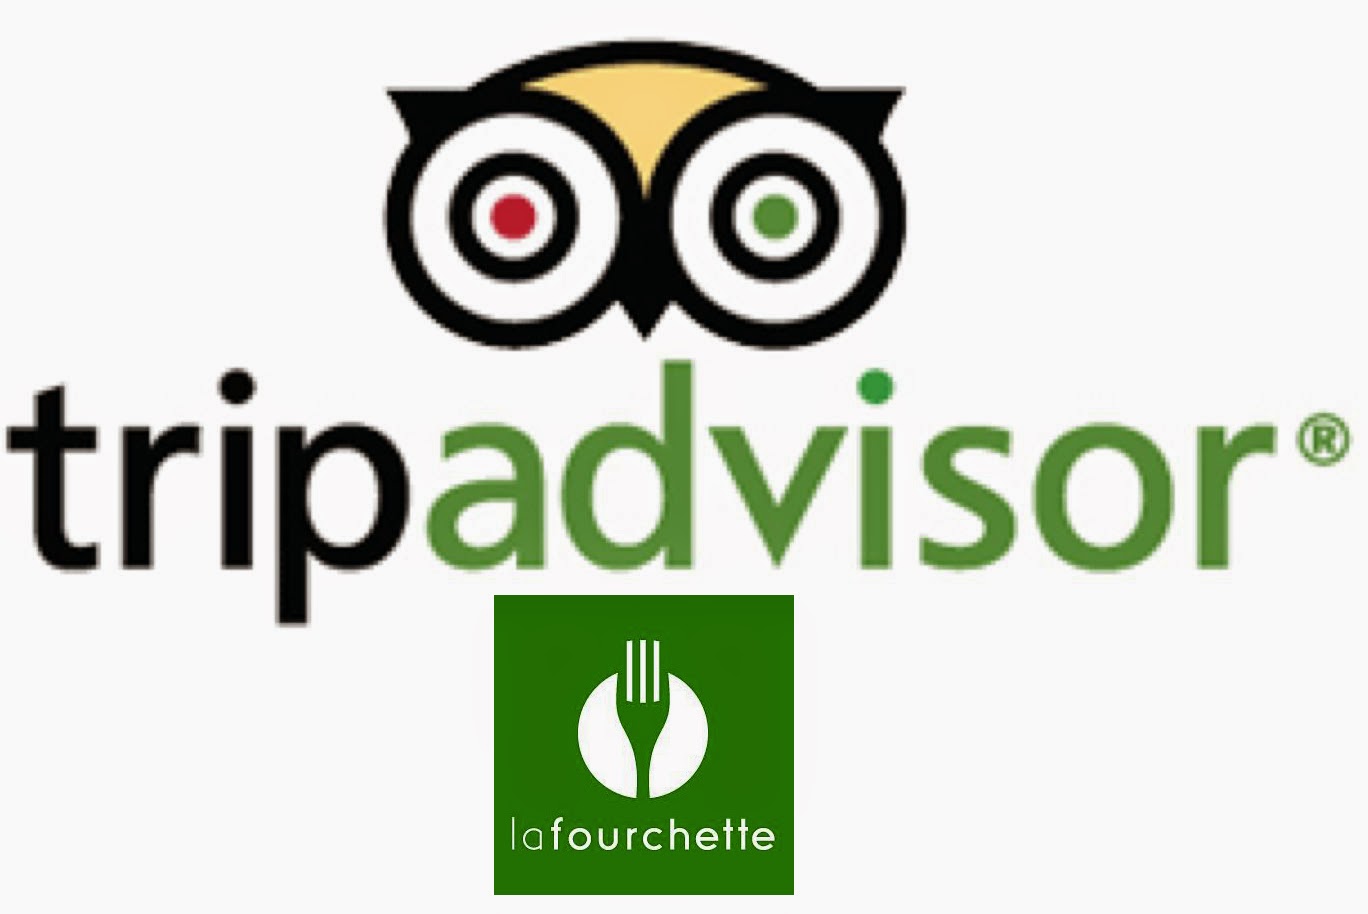 TripAdvisor, LaFourchette, start-up LaFourchette, TripAdvisor buys LaFourchette, TripAdvisor buys start-up LaFourchette, software, internet, TripAdvisor acquires LaFourchette, 